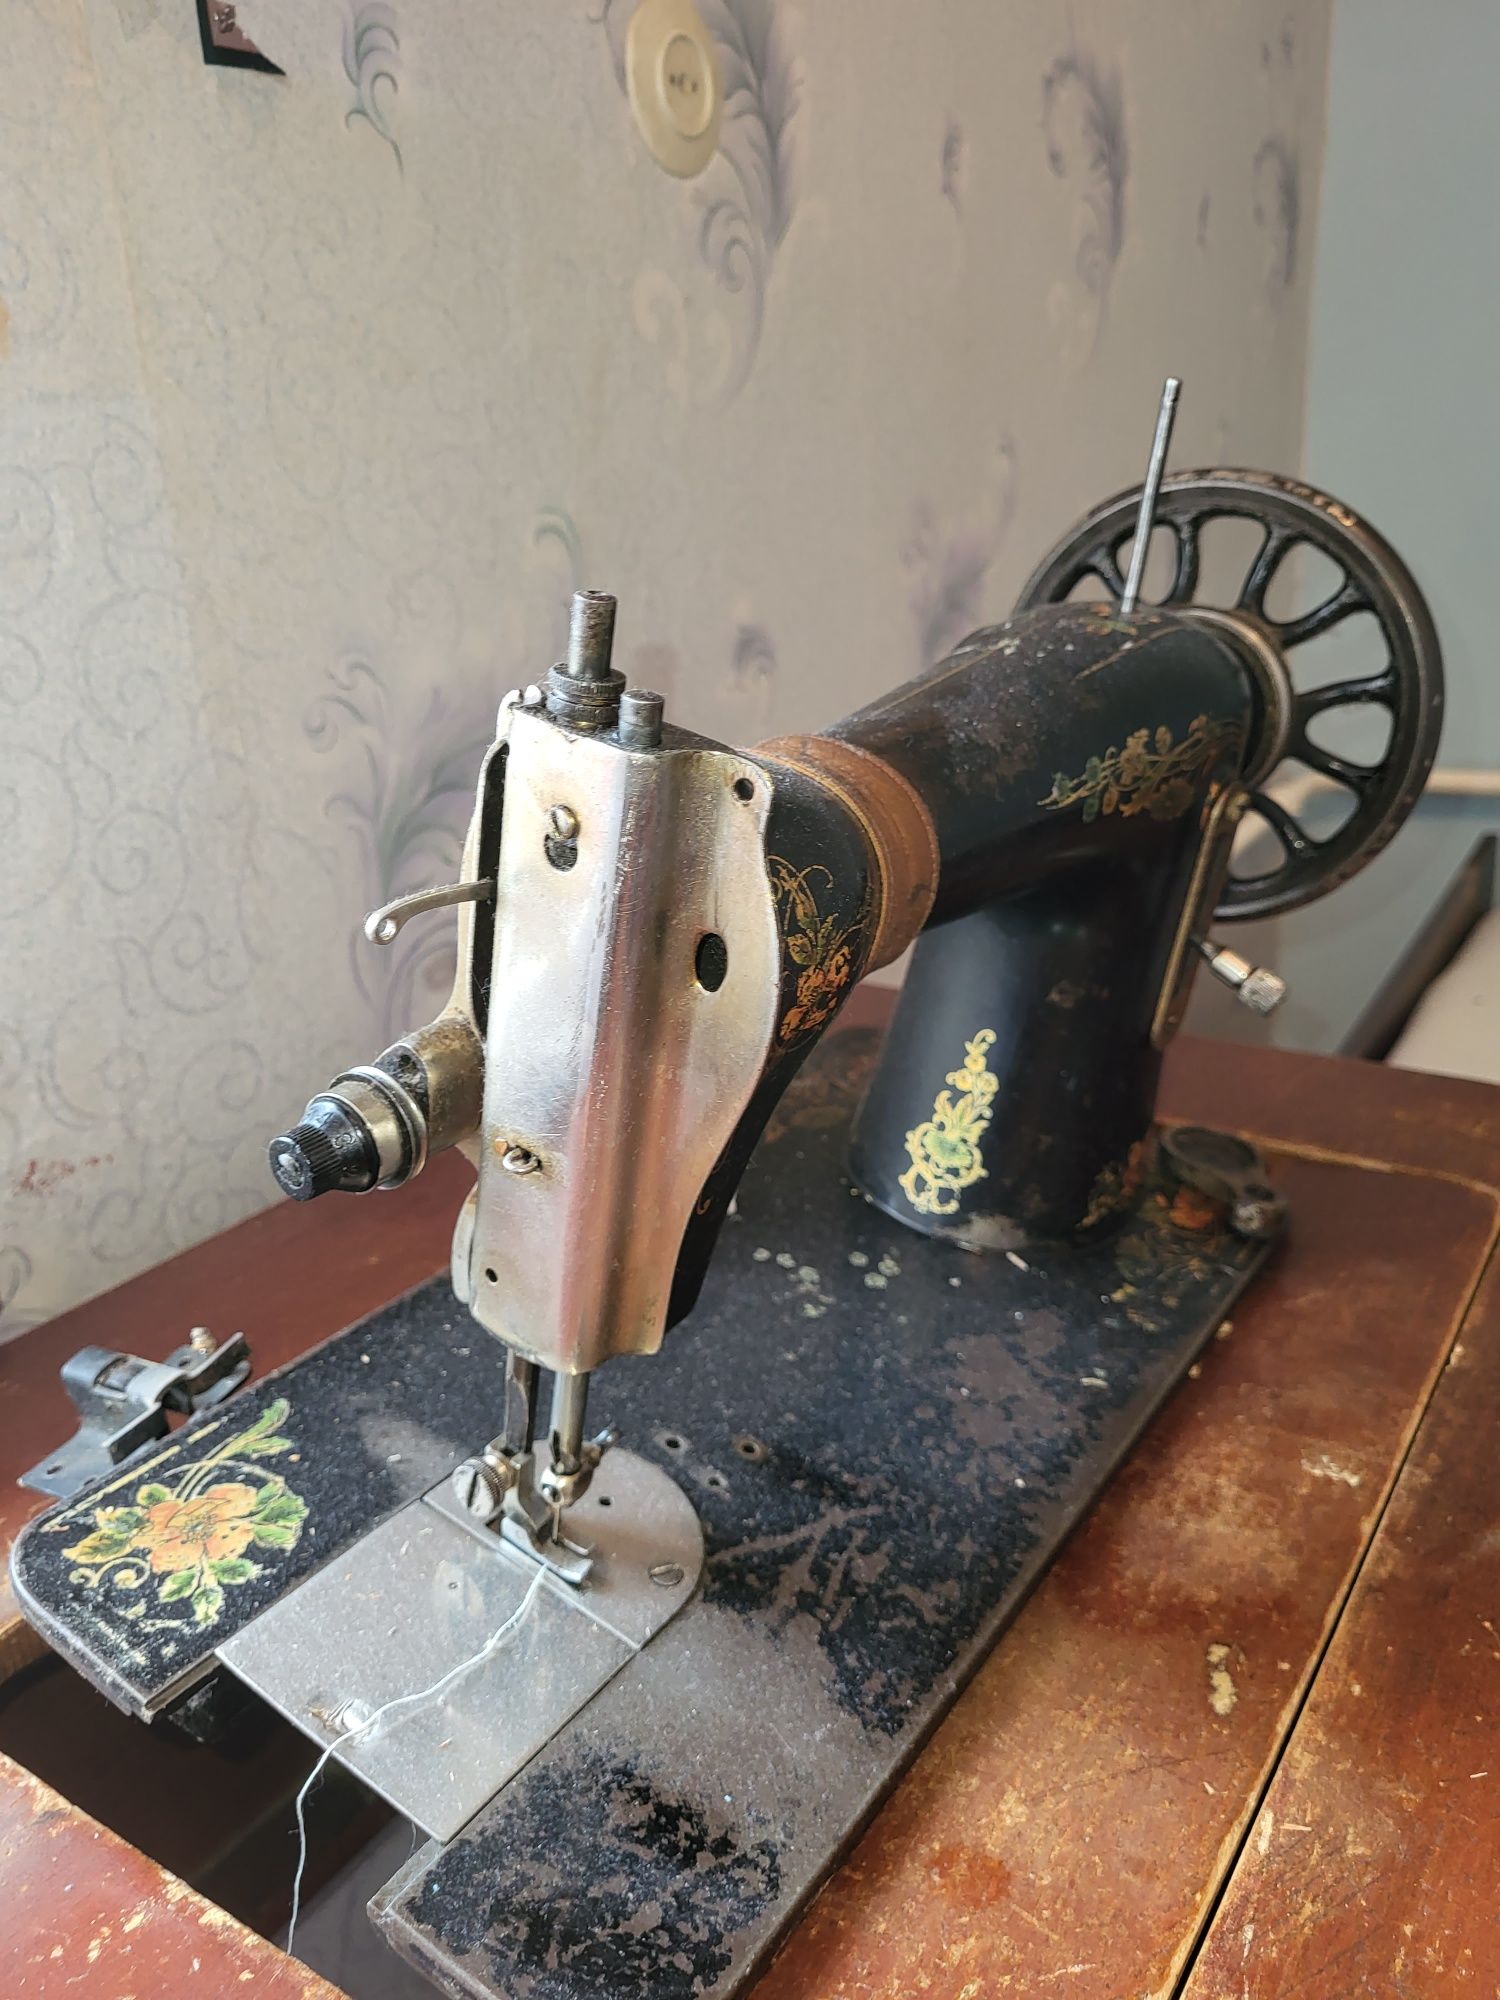 Zinger швейная машинка. Старинная. Машинка со столом